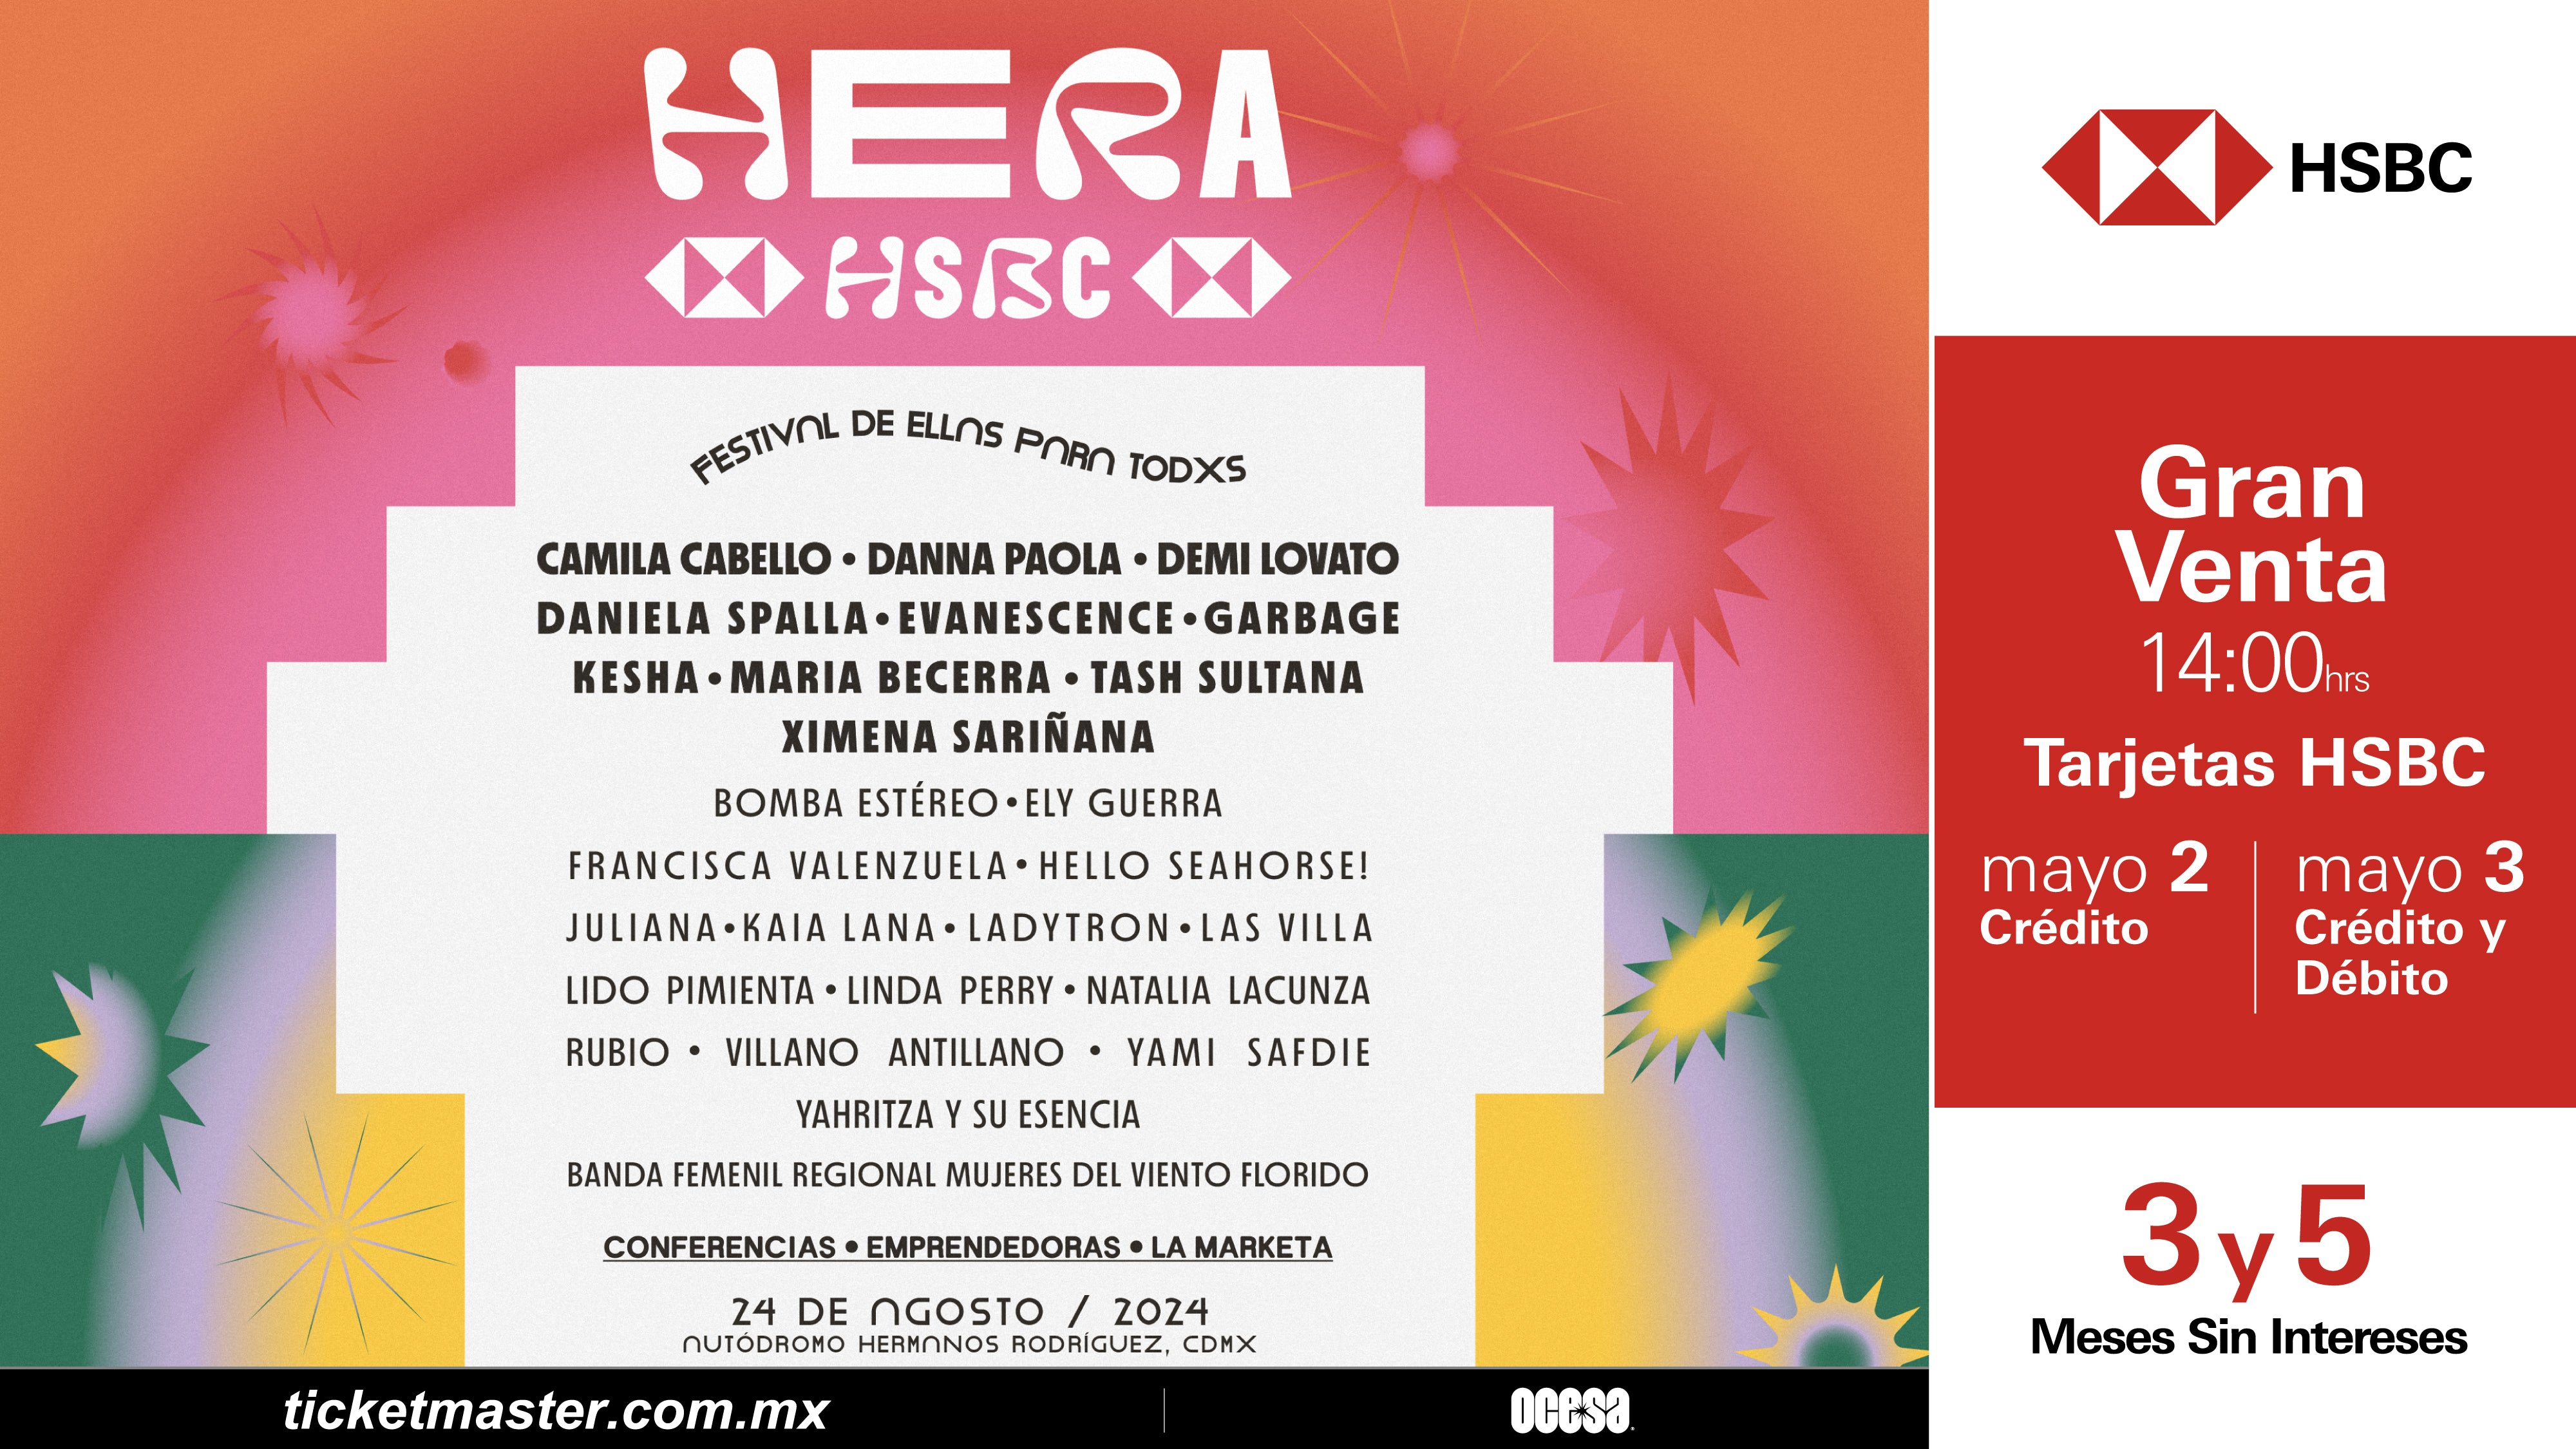 Hera HSBC, un festival de ellas para todxs